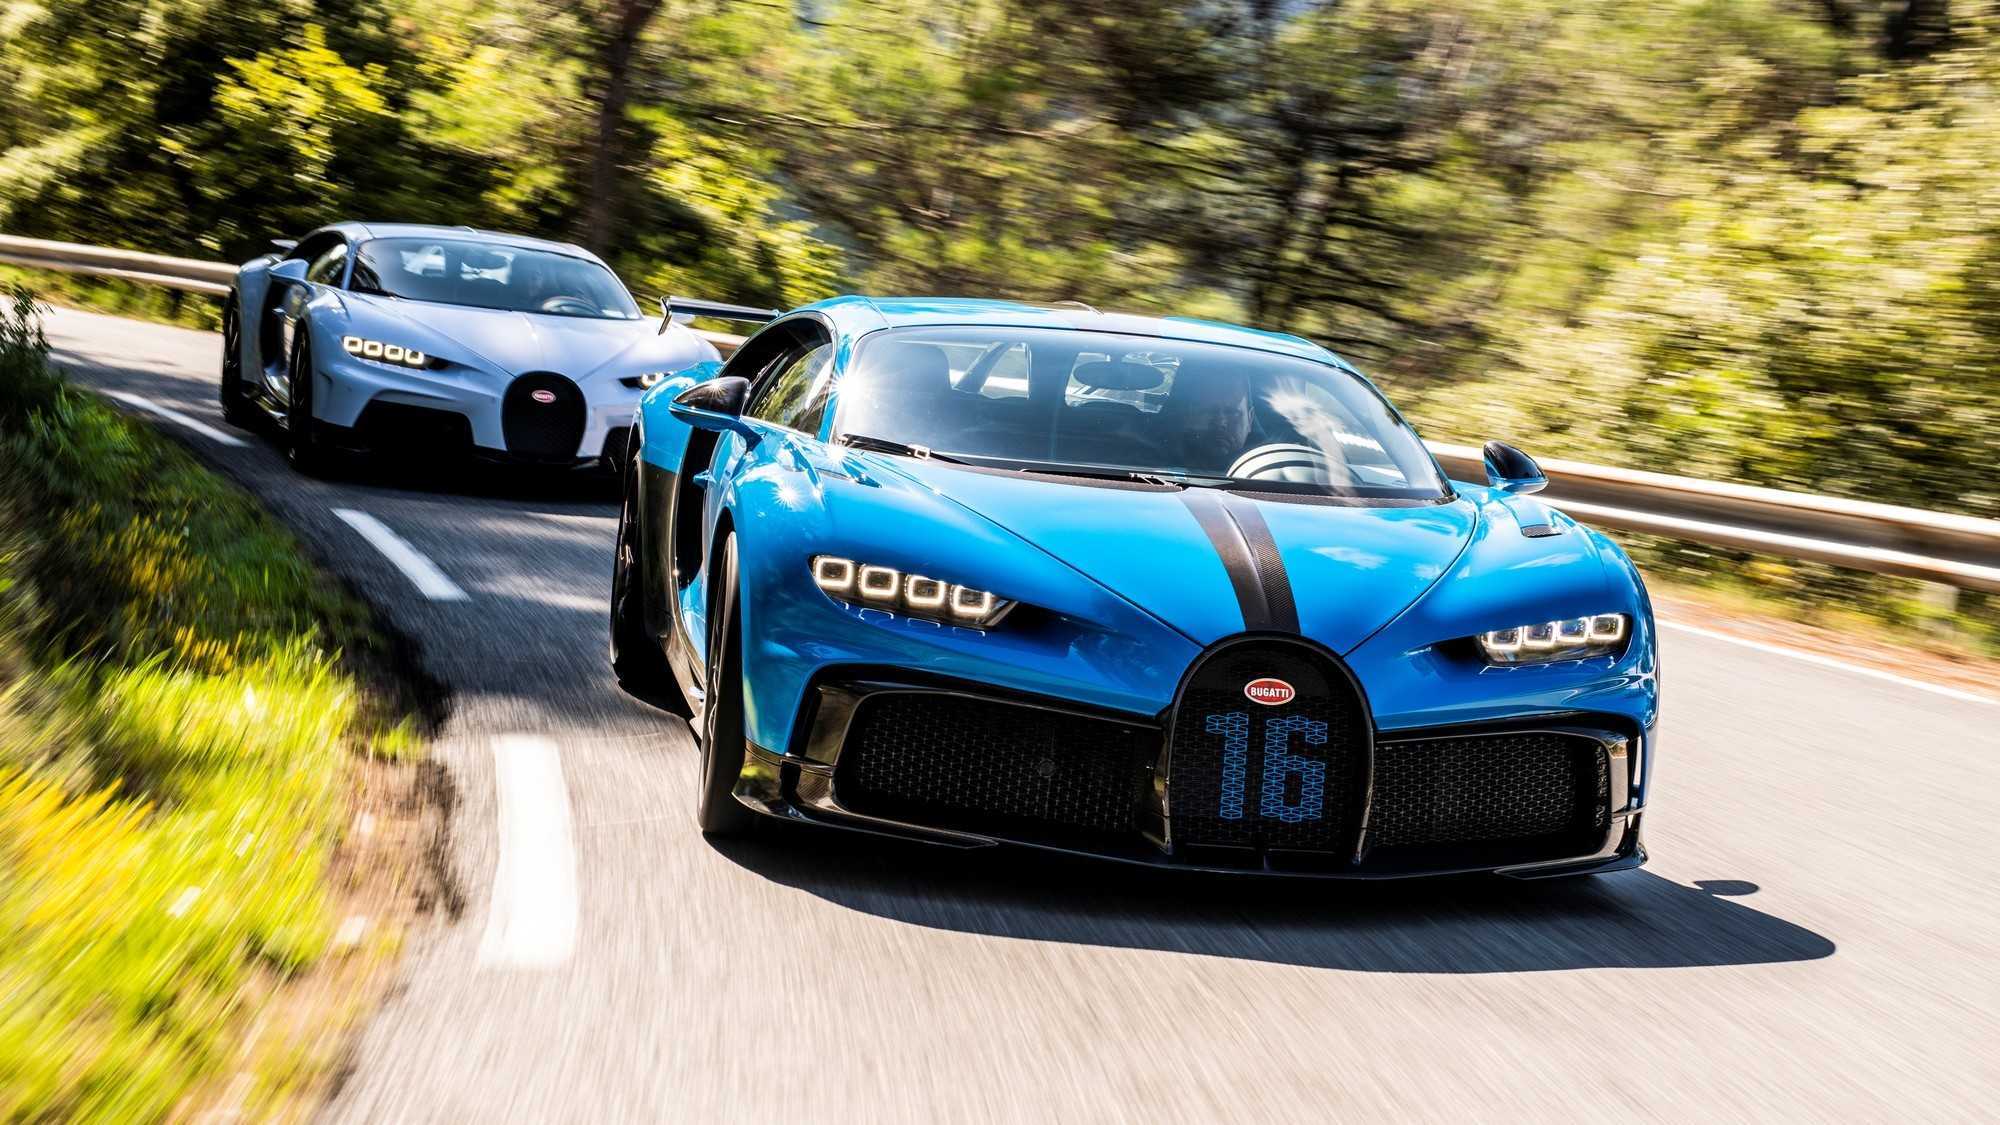 Bugatti chiron: история создания суперкара мощностью 1500 л.с.